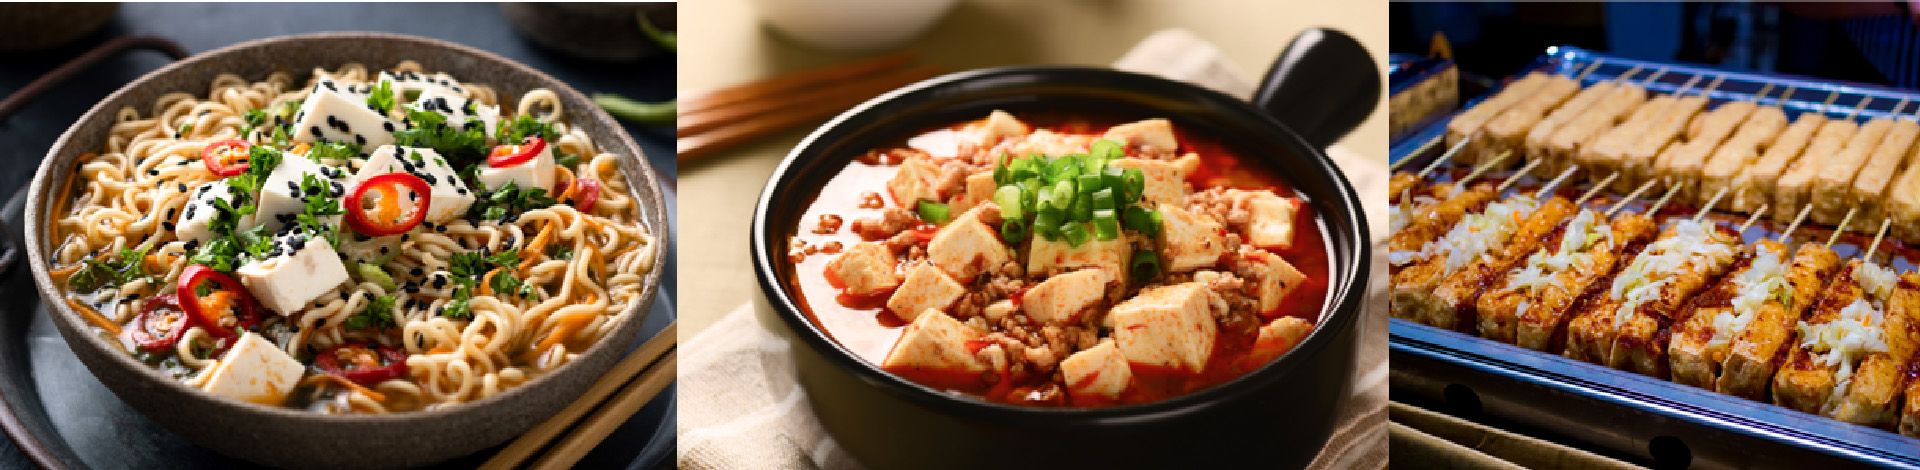 Rôzne druhy tofu majú rôznu štruktúru, pevnosť a rôzne možnosti použitia pri jedle na vašom stole, Yung Soon Lih (eversoon) tofu výrobný stroj je schopný spolupracovať s voliteľným zariadením na výrobu extrémne pevného tofu a ázijského hodvábneho tofu.